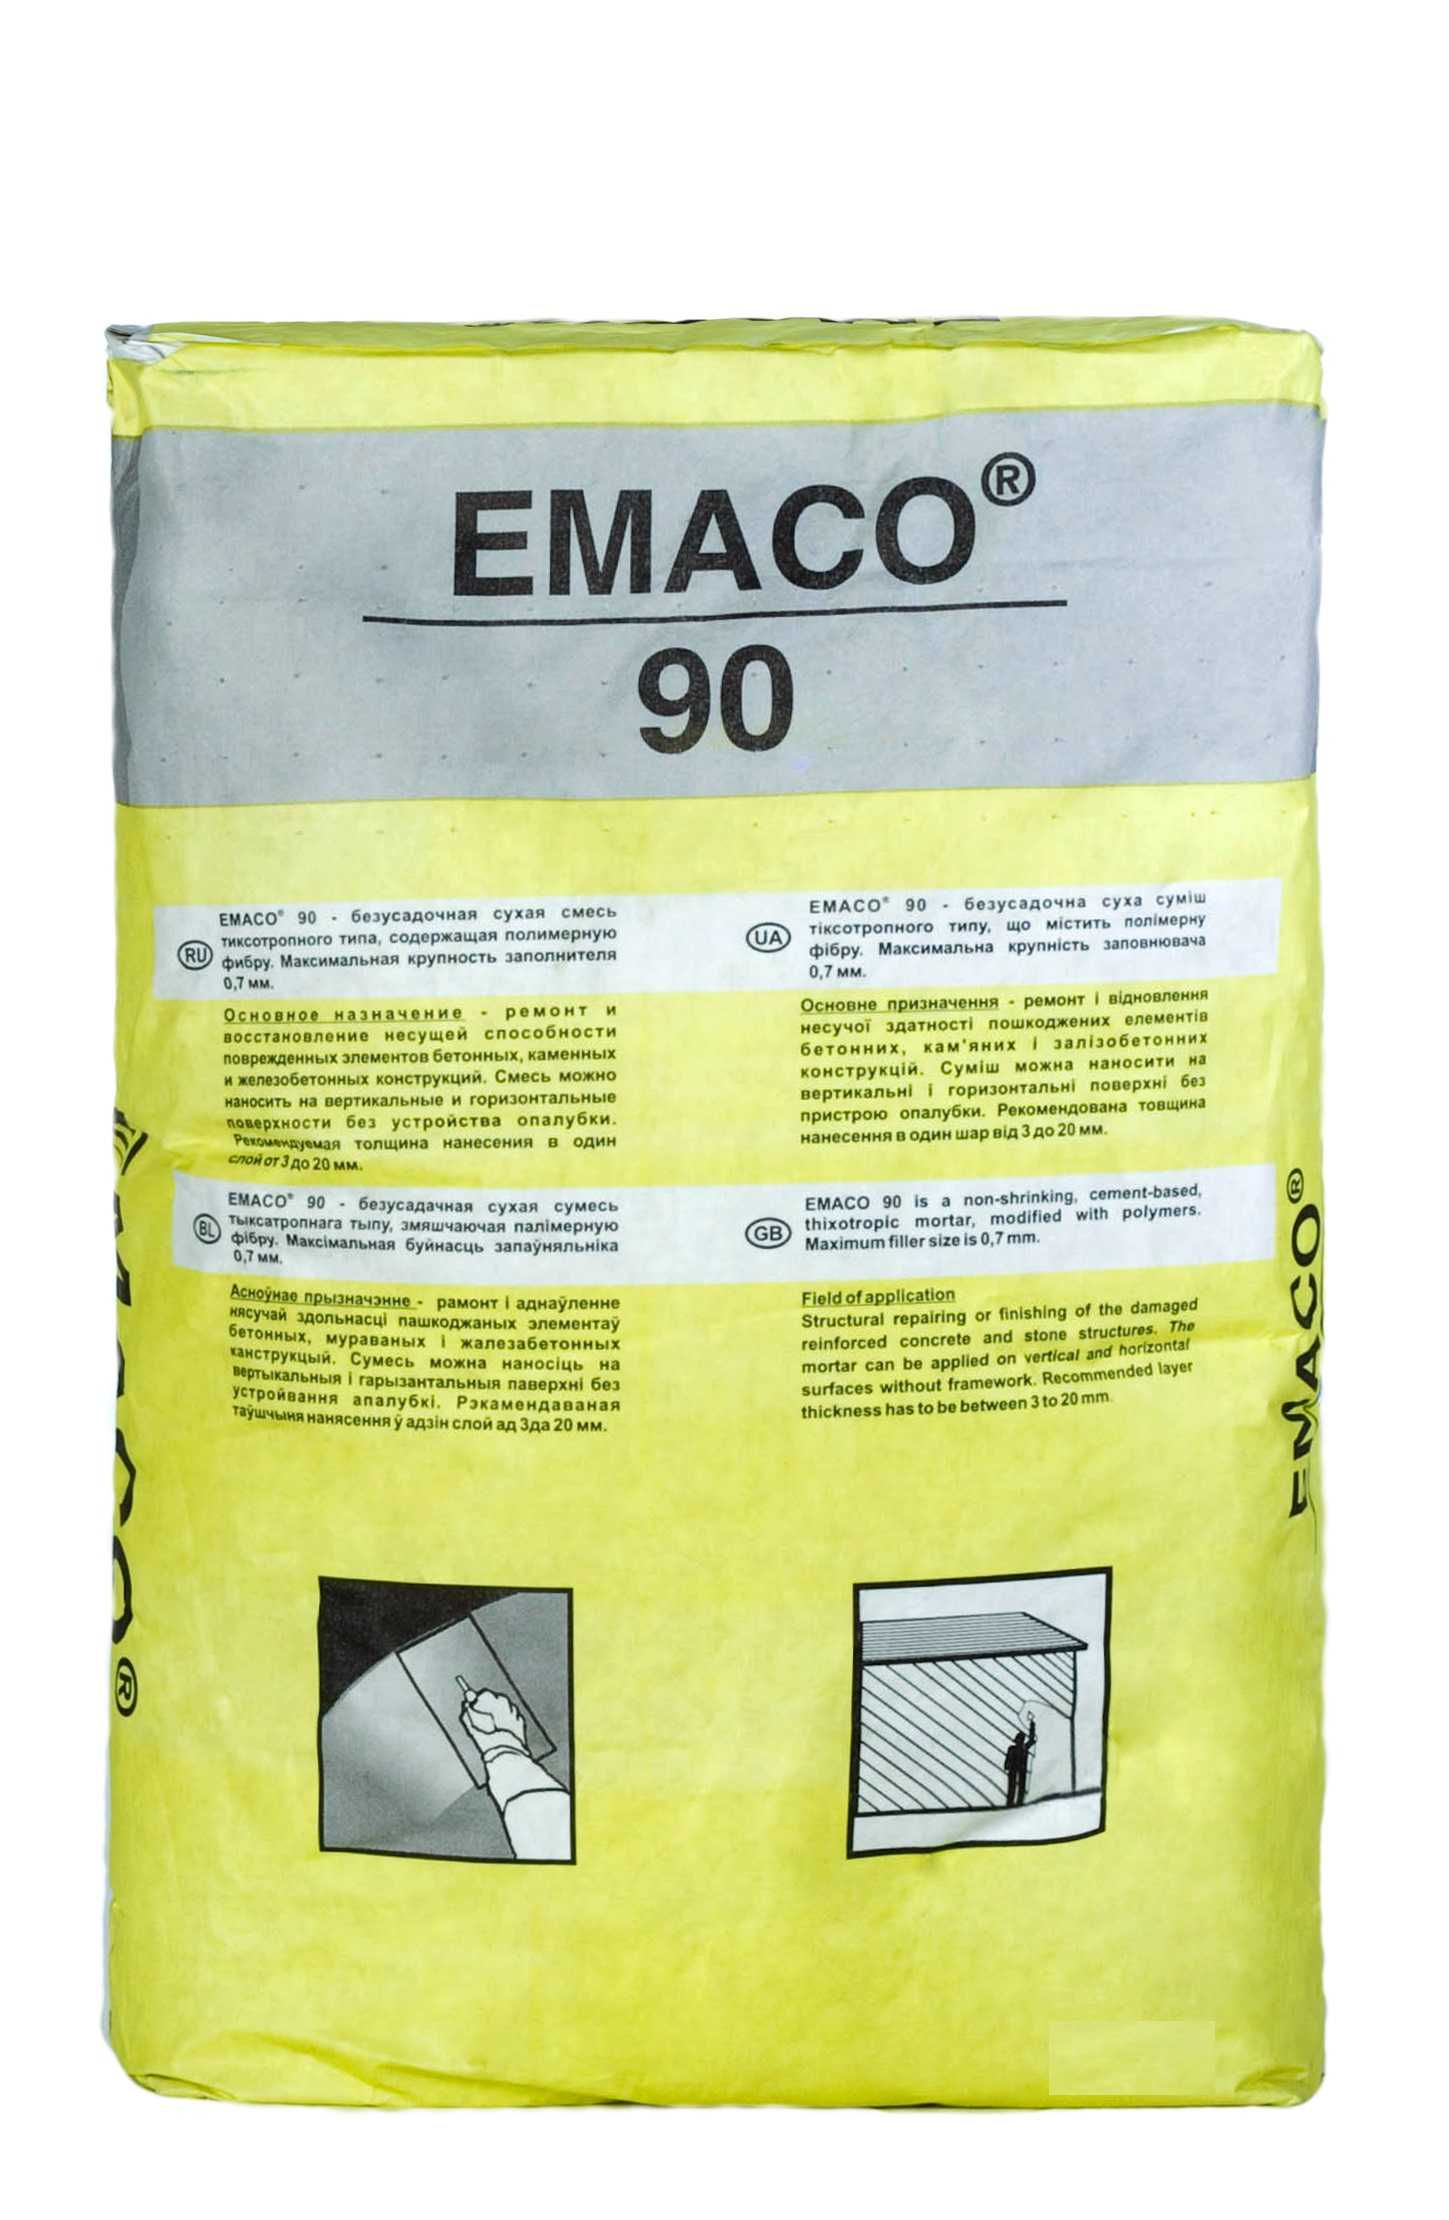 Выбор ремонтной смеси для бетона emaco